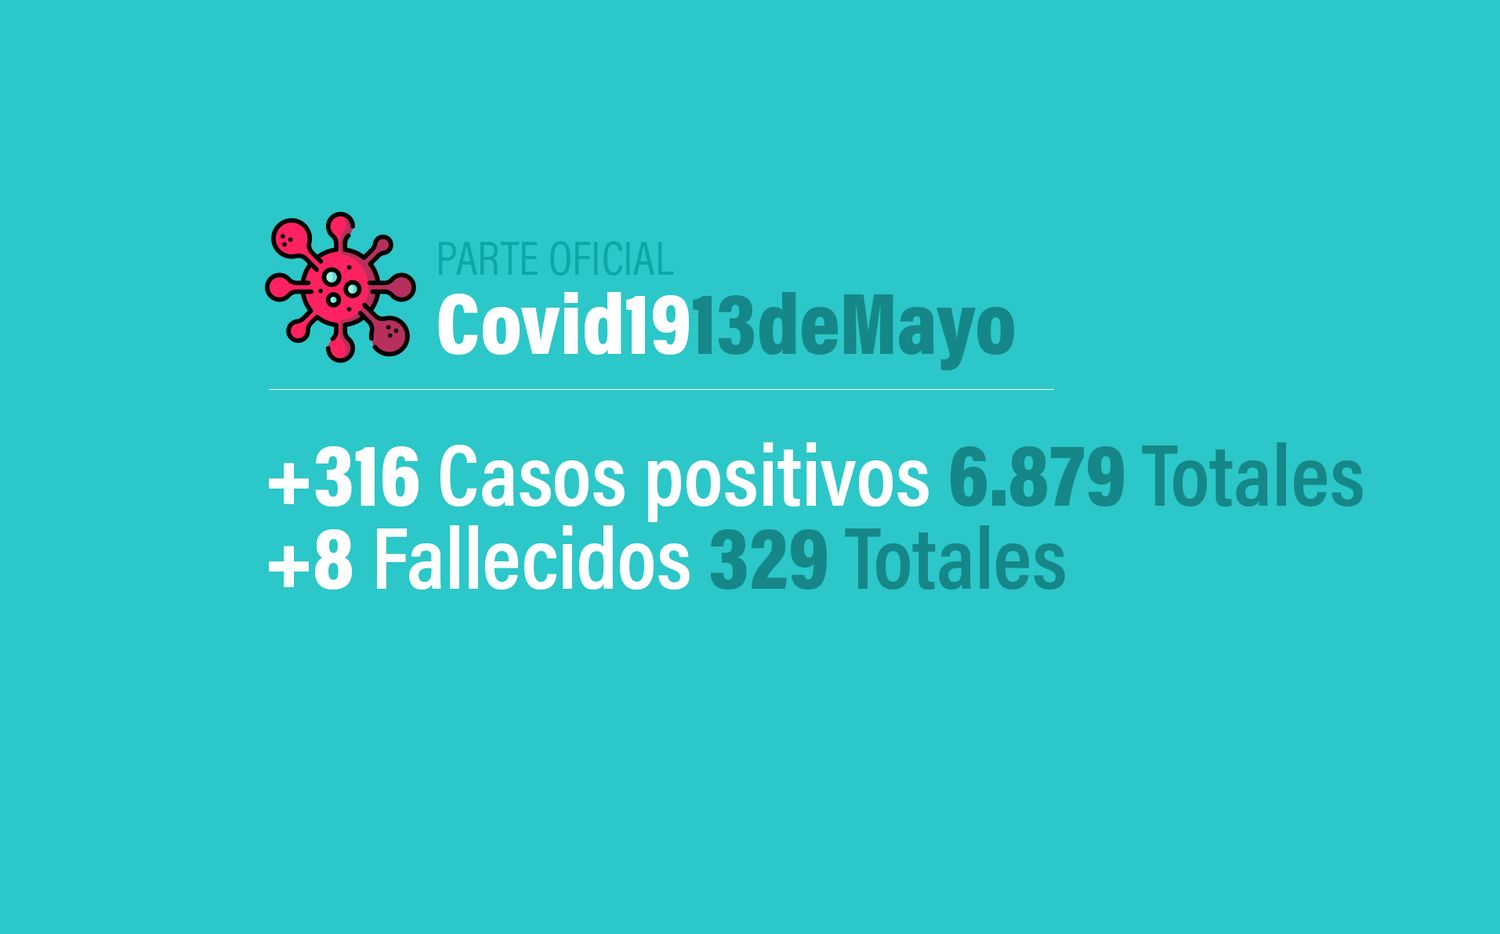 Coronavirus en Argentina: 316 nuevos casos, 6879 confirmados y 329 muertes, al 13 de mayo